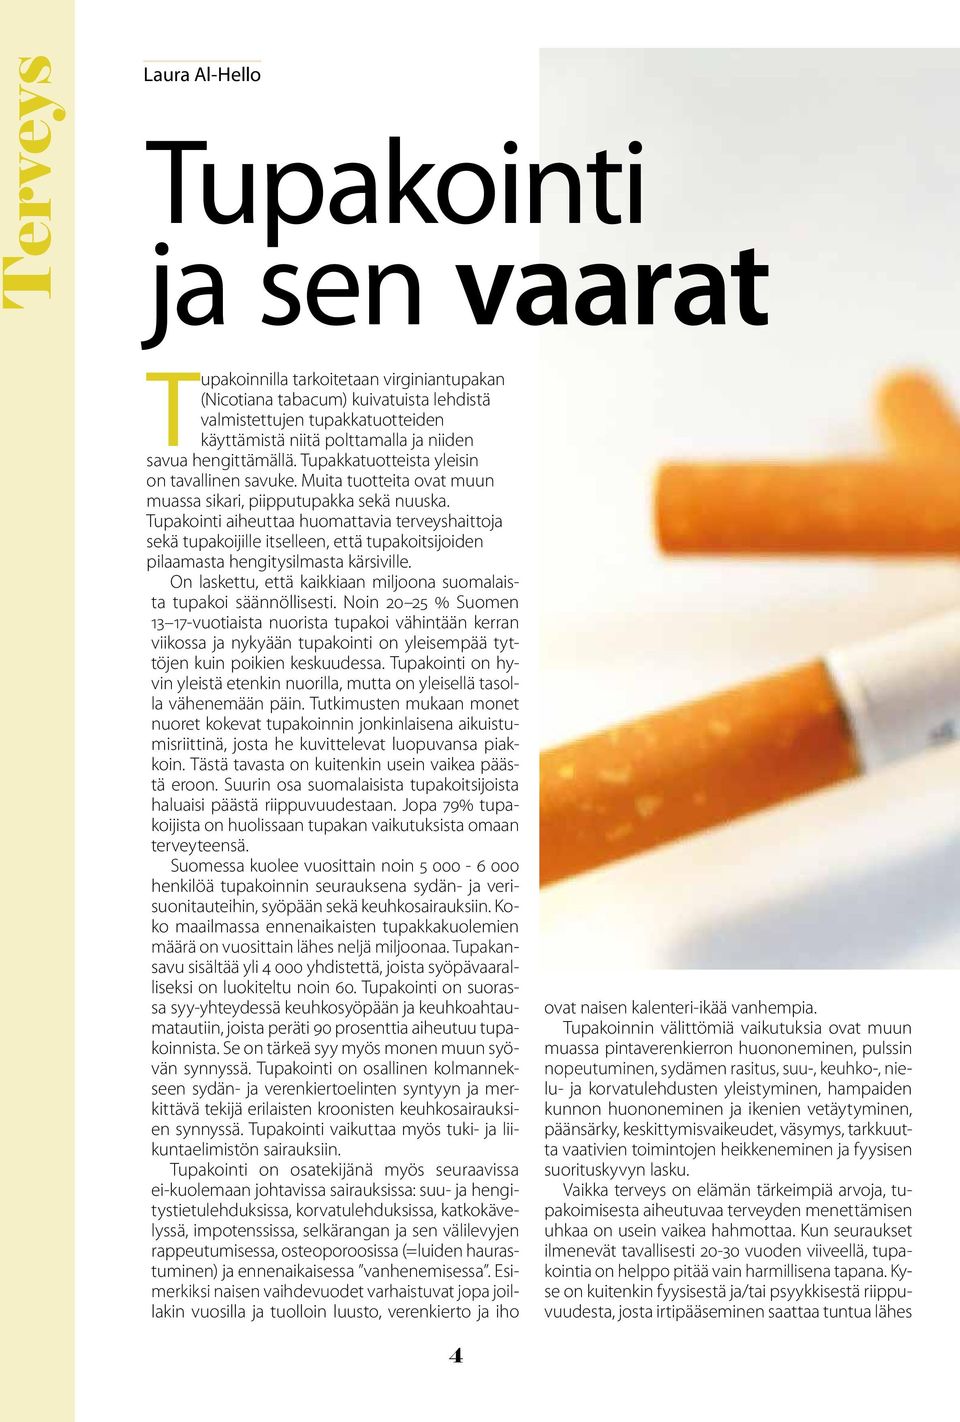 Tupakointi aiheuttaa huomattavia terveyshaittoja sekä tupakoijille itselleen, että tupakoitsijoiden pilaamasta hengitysilmasta kärsiville.